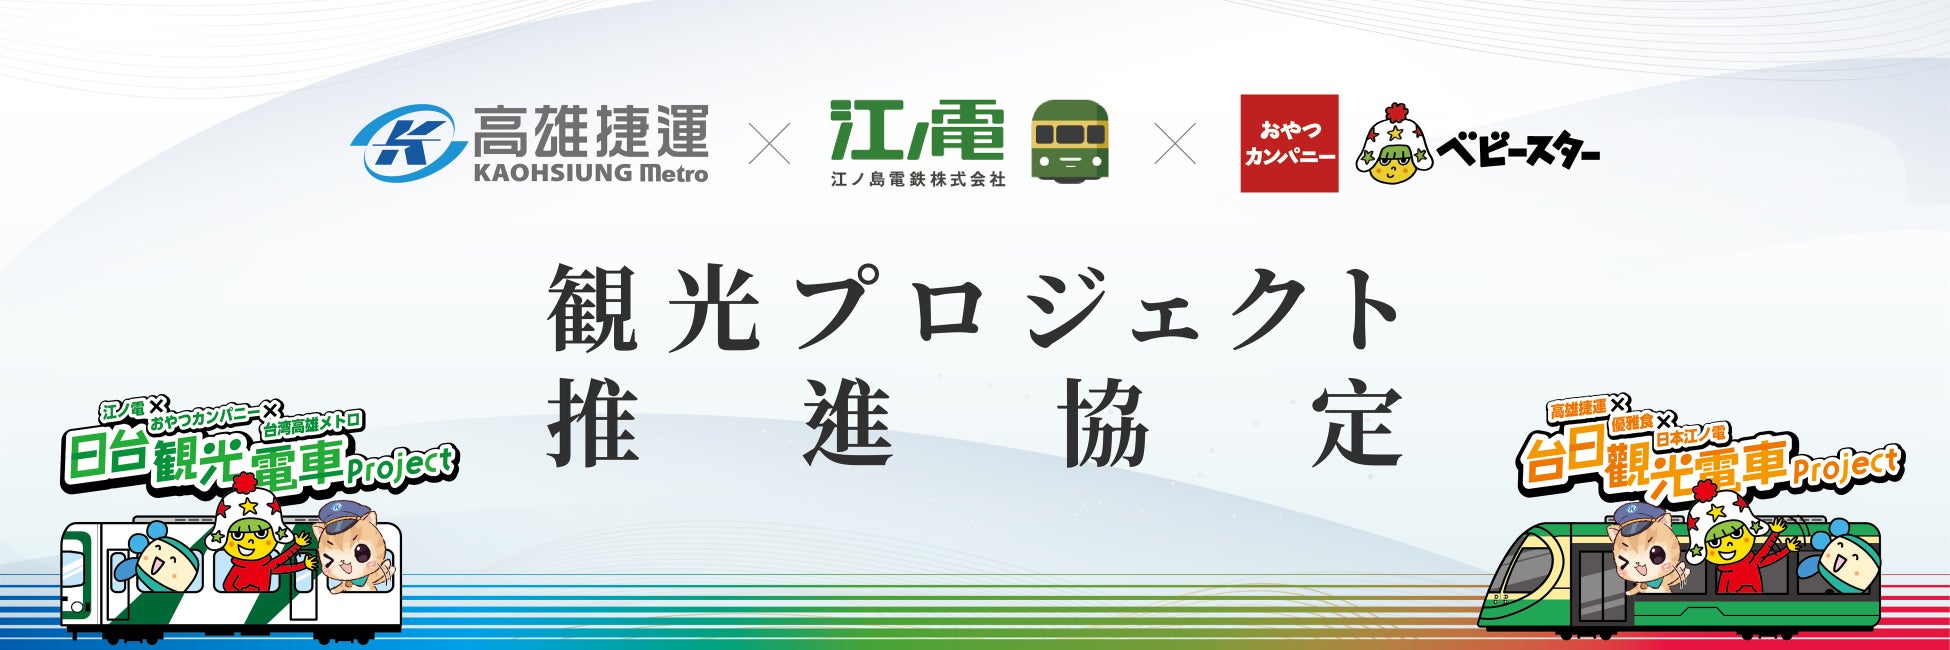 江ノ島電鉄×高雄メトロ×おやつカンパニー 3社による日台観光電車プロジェクト協定に署名